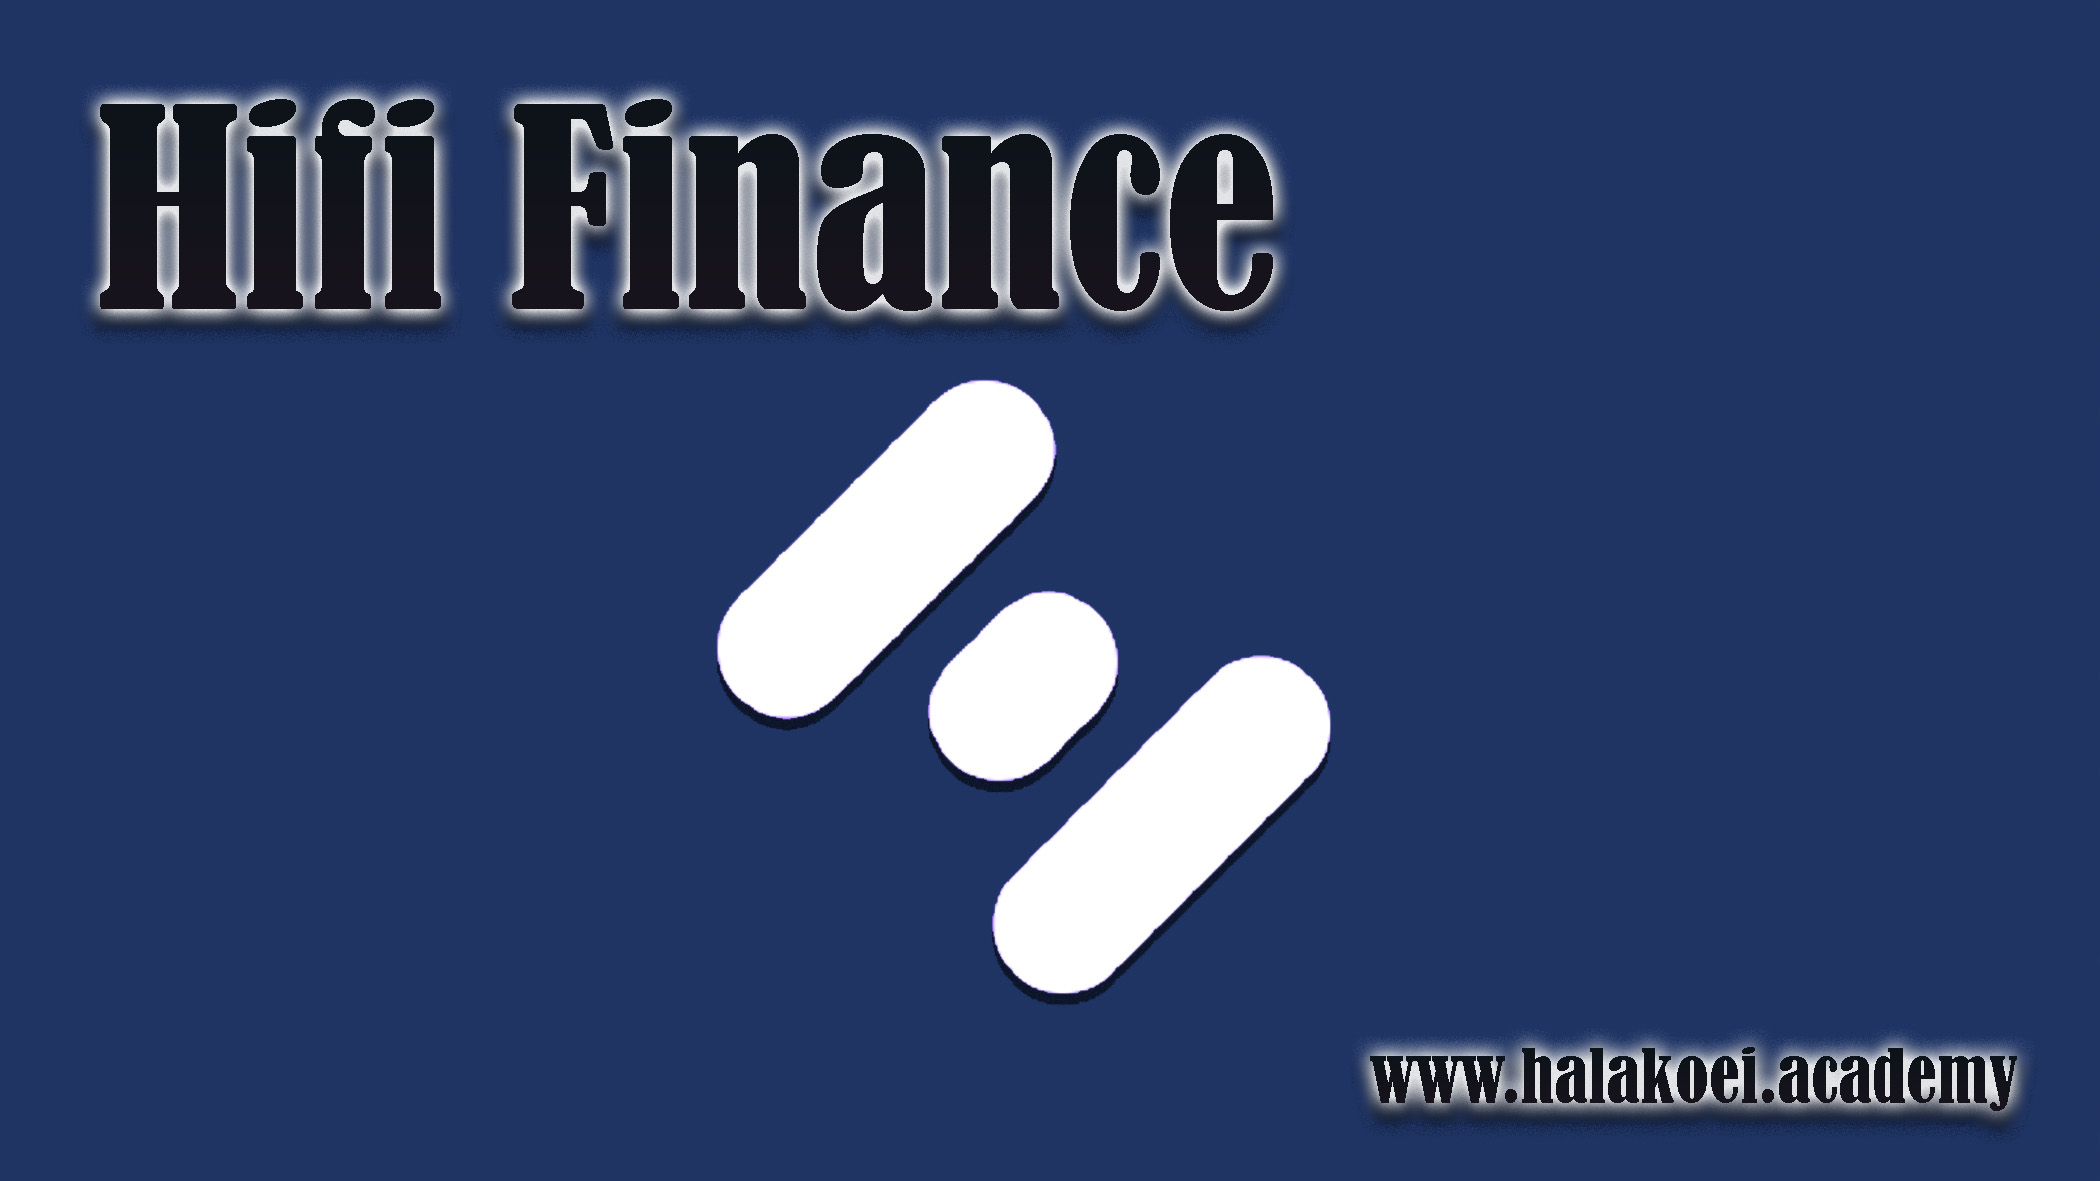 Hifi Finance